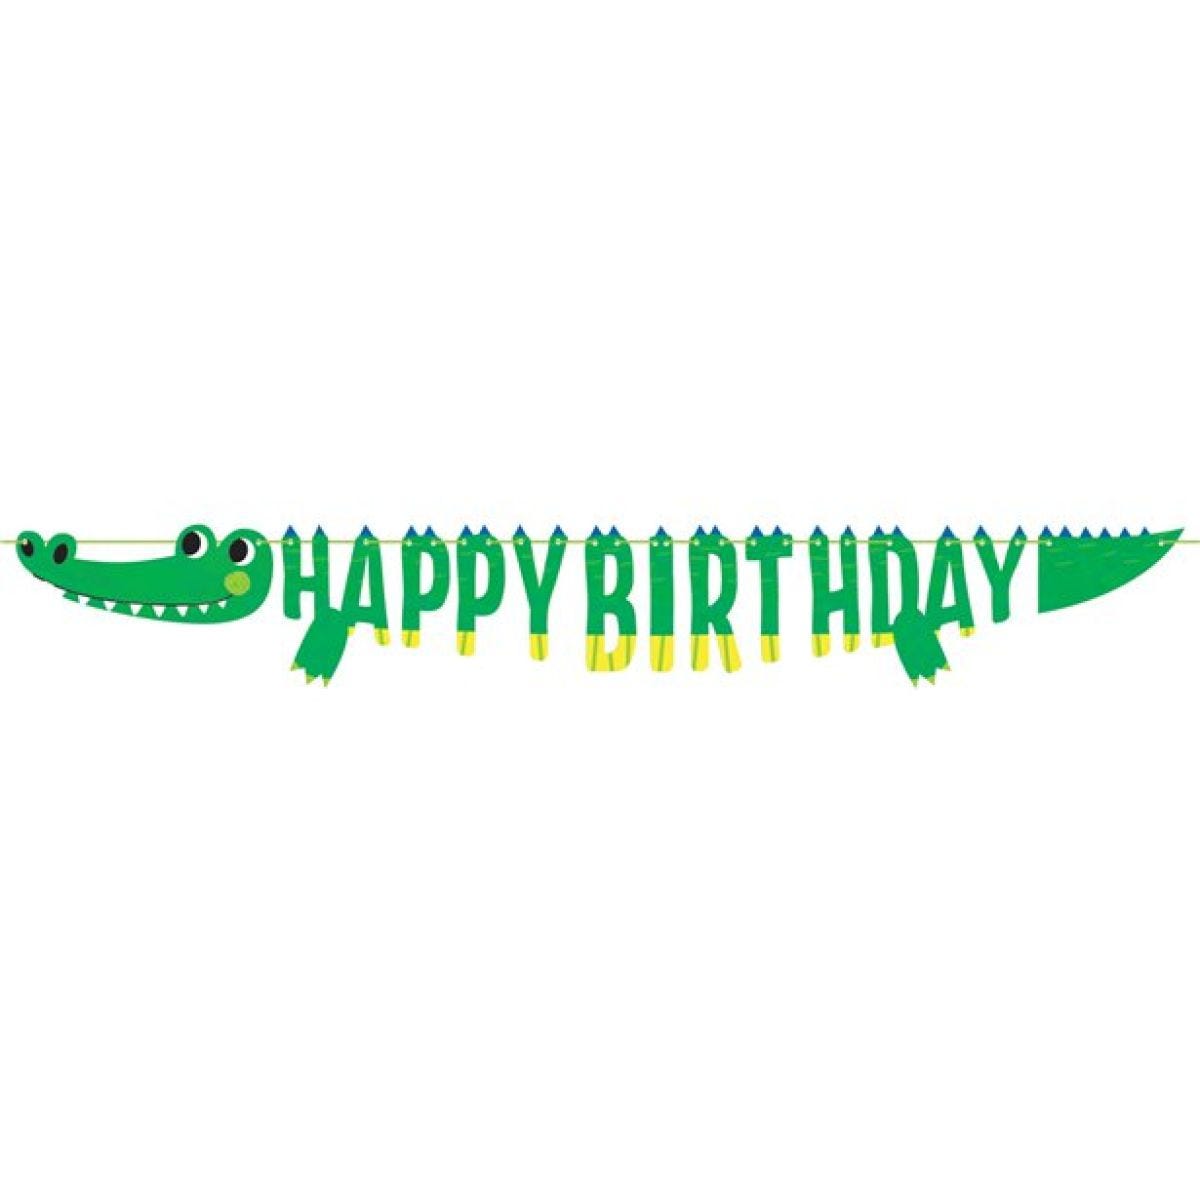 Alligator Happy Birthday Paper Banner - 1.8m